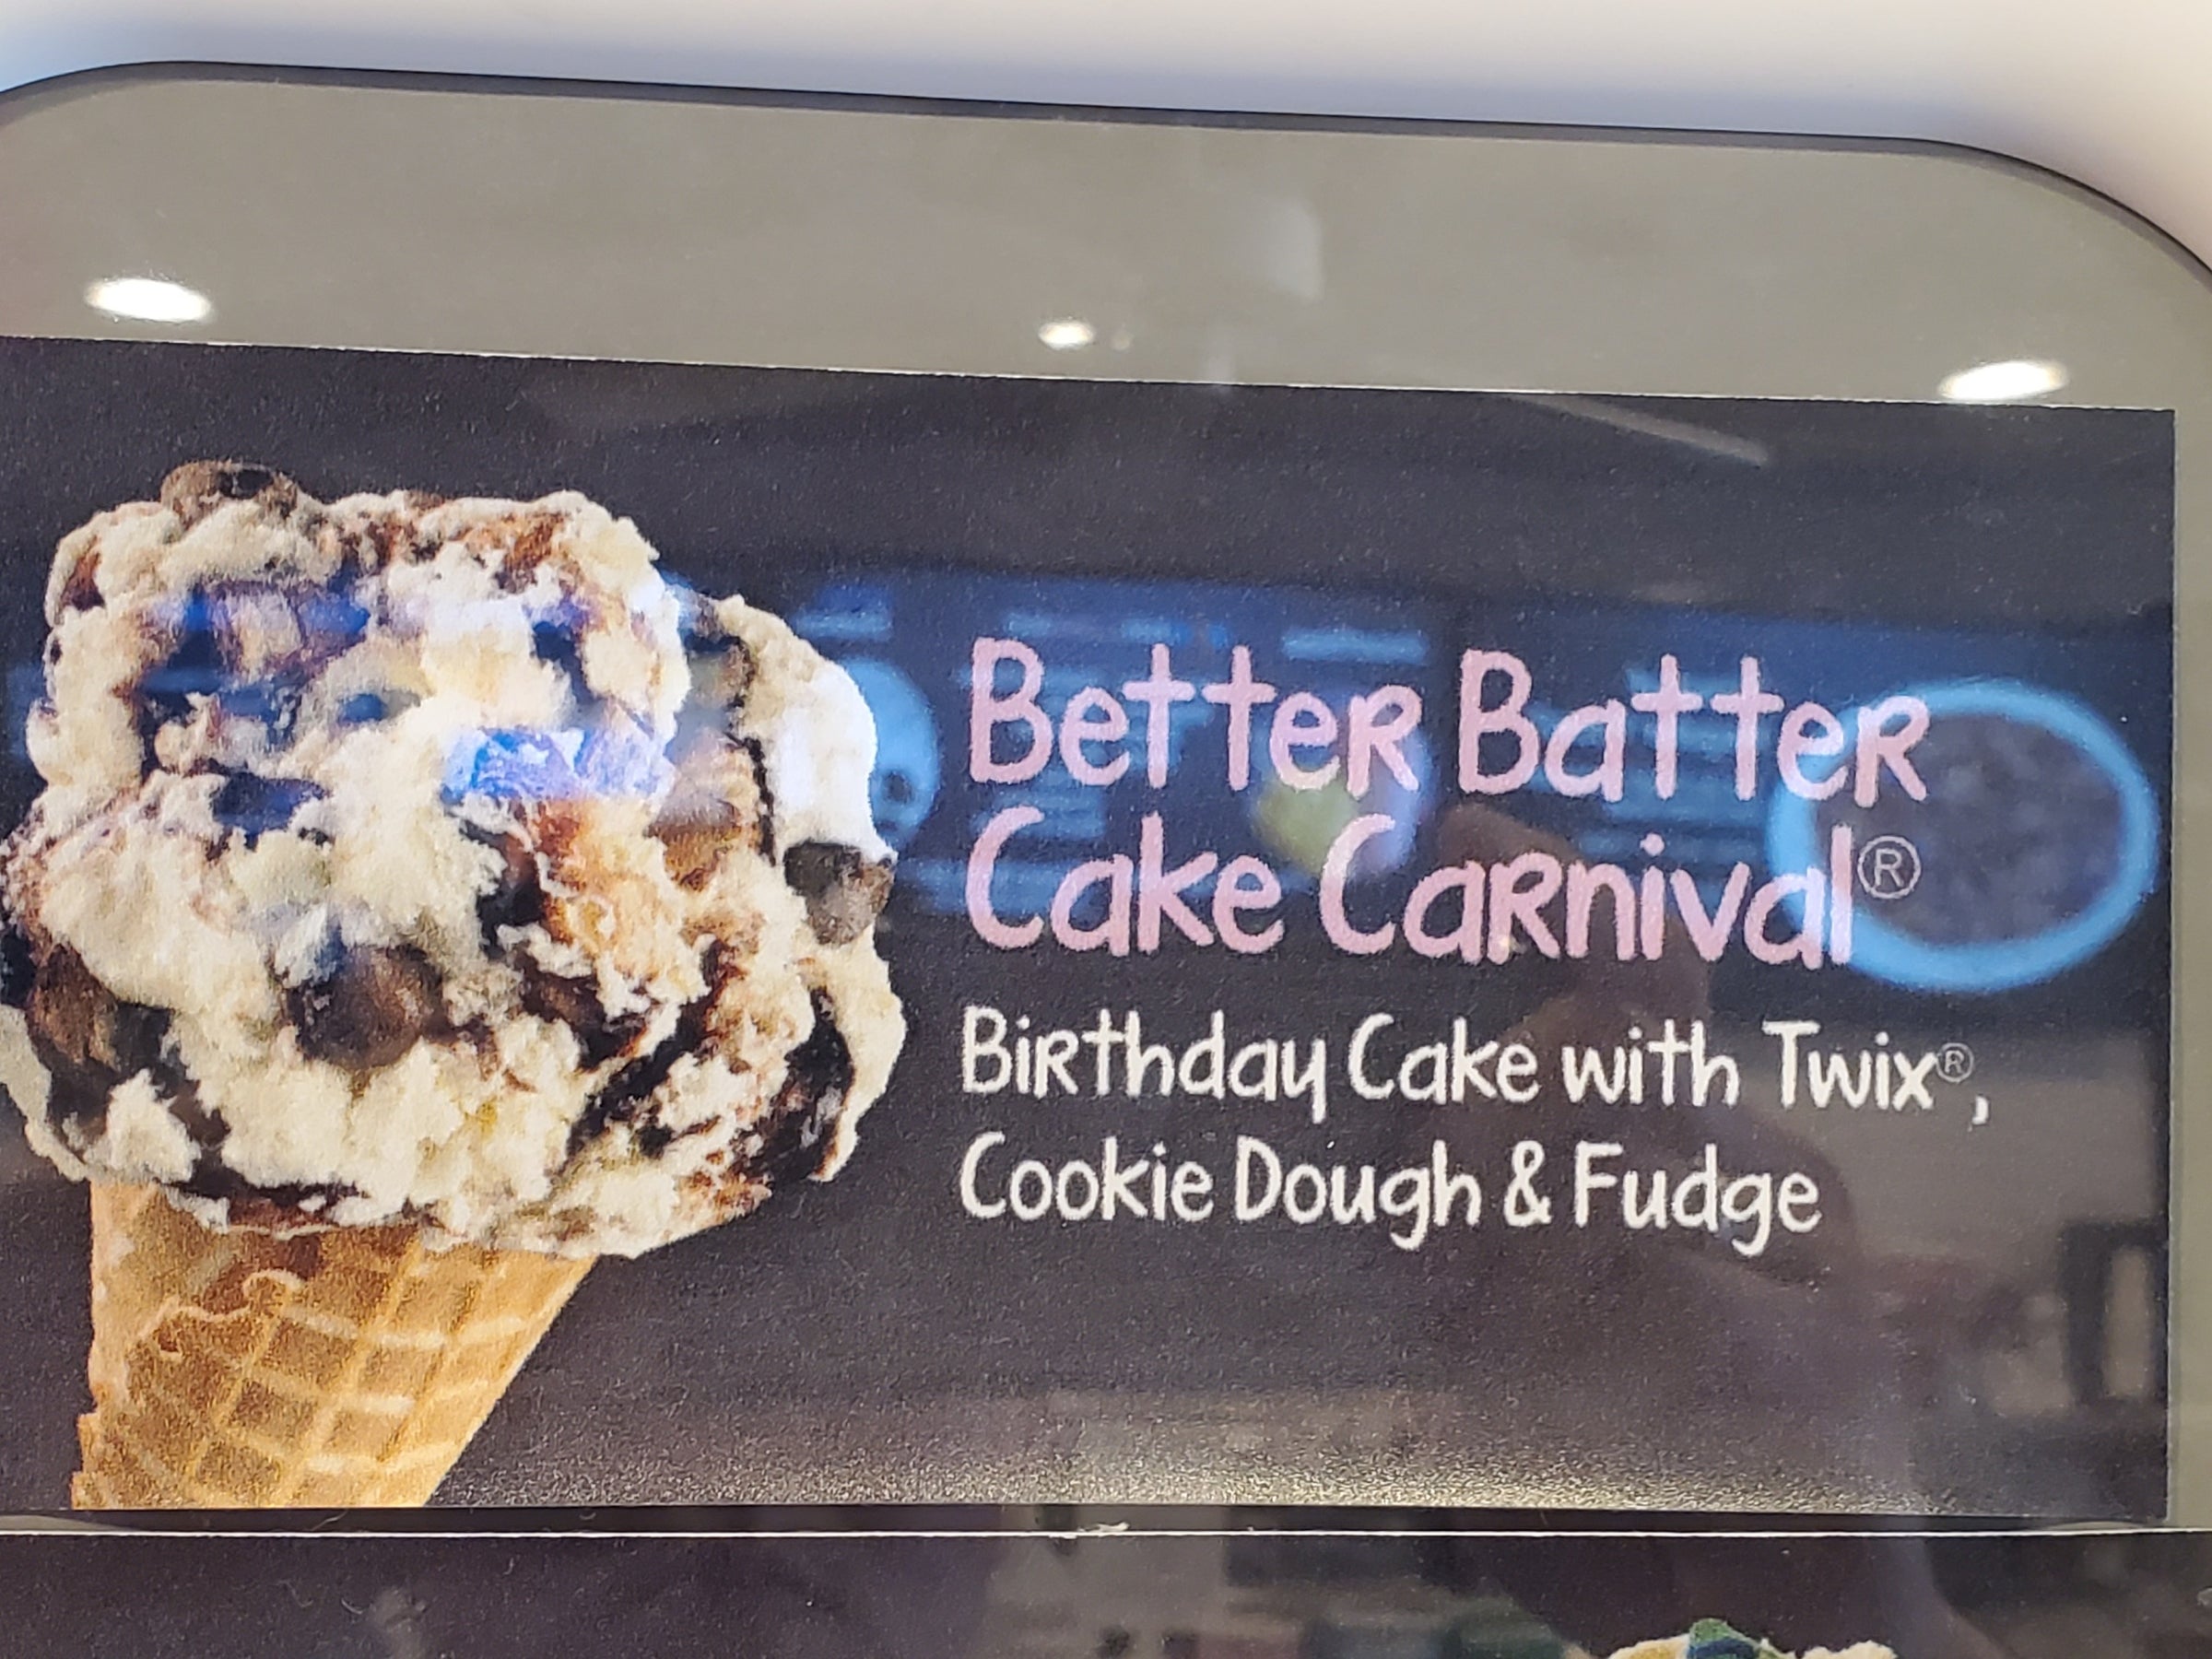 Better Batter Cake Carnival, Mr. Moo's Ice Cream Cafe